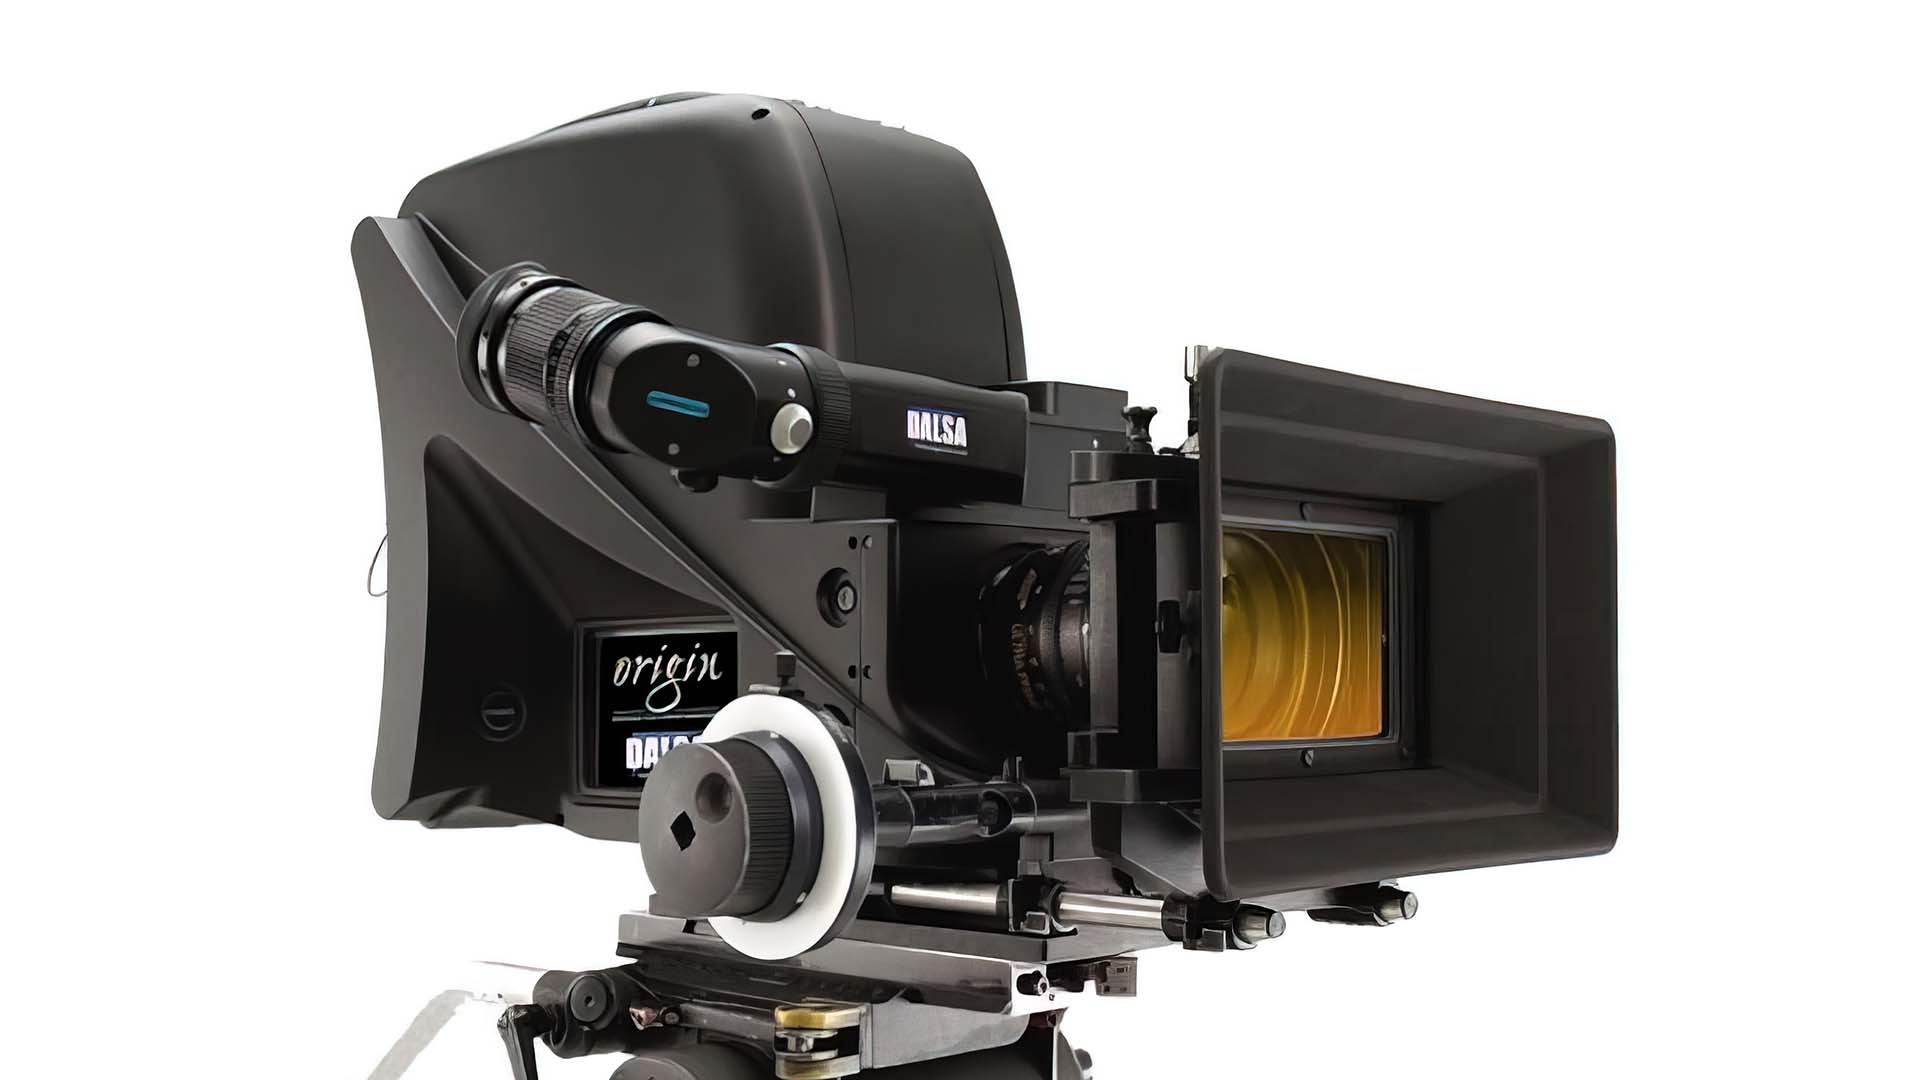 The Dalsa Origin, the first 4K digital cinema camera.